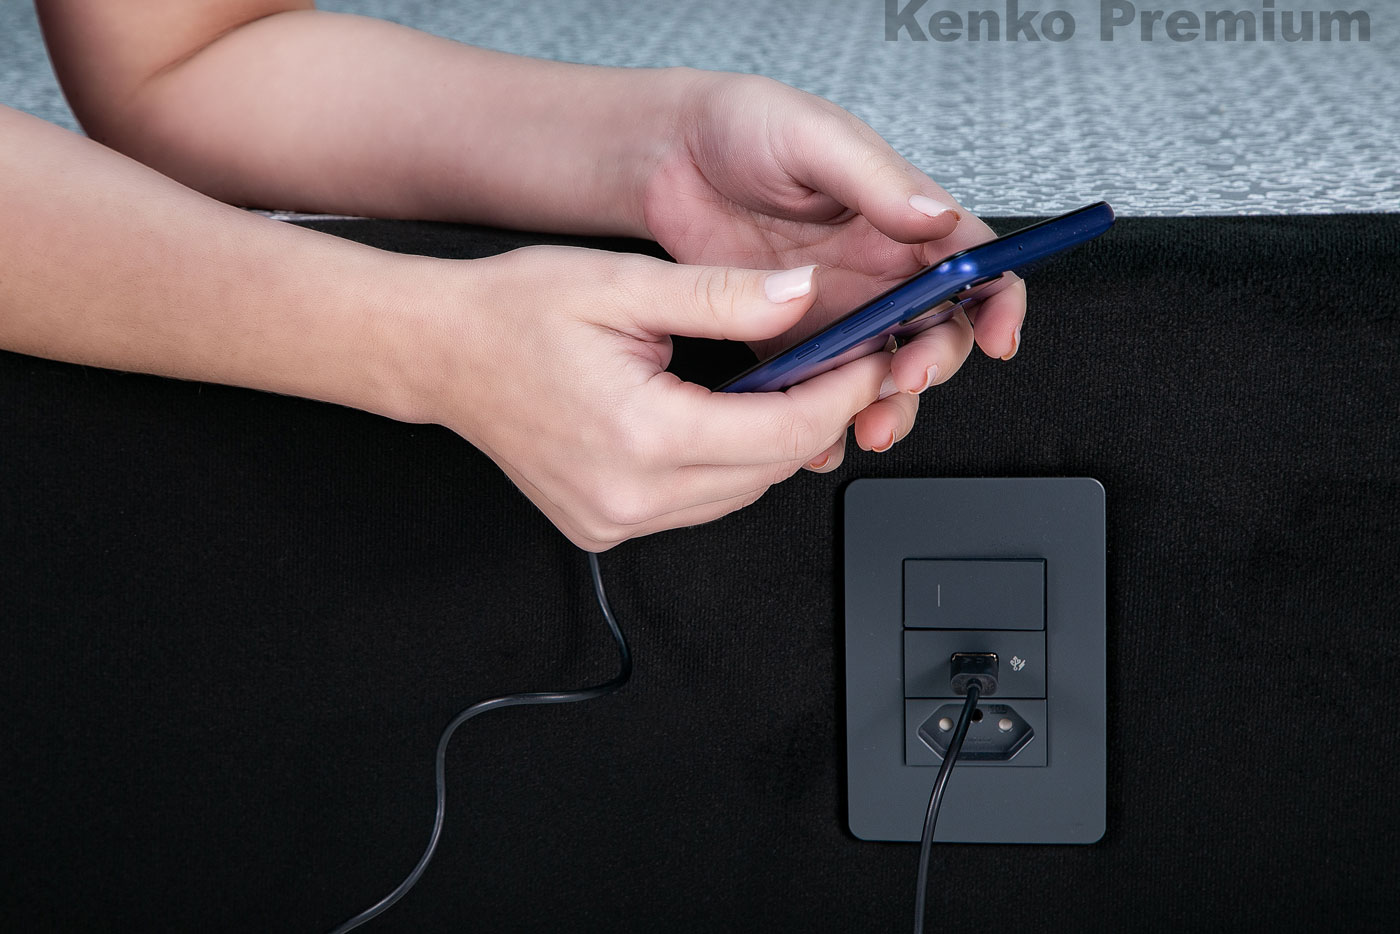 Box Base Para Colchão Iluminado King Size 1,93x2,03 Usb C/kit Conect Suede Kenko Premium - Kenko Premium Colchões